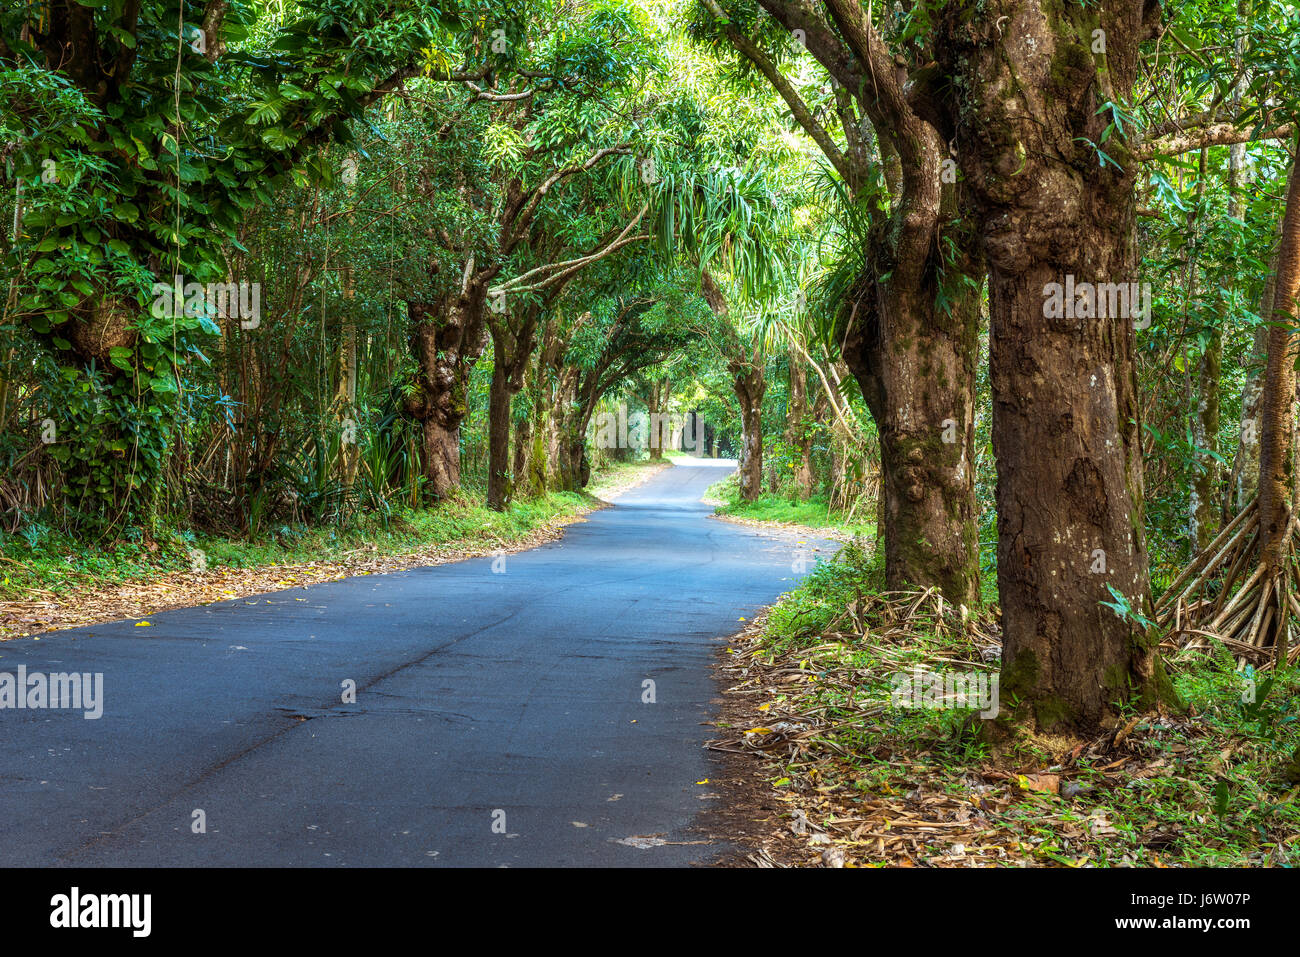 Ein Blätterdach der Bäume auf einer abgelegenen Straße in Hawaii erstellt eine beeindruckende Szene als man fährt durch den grünen Wald. Stockfoto